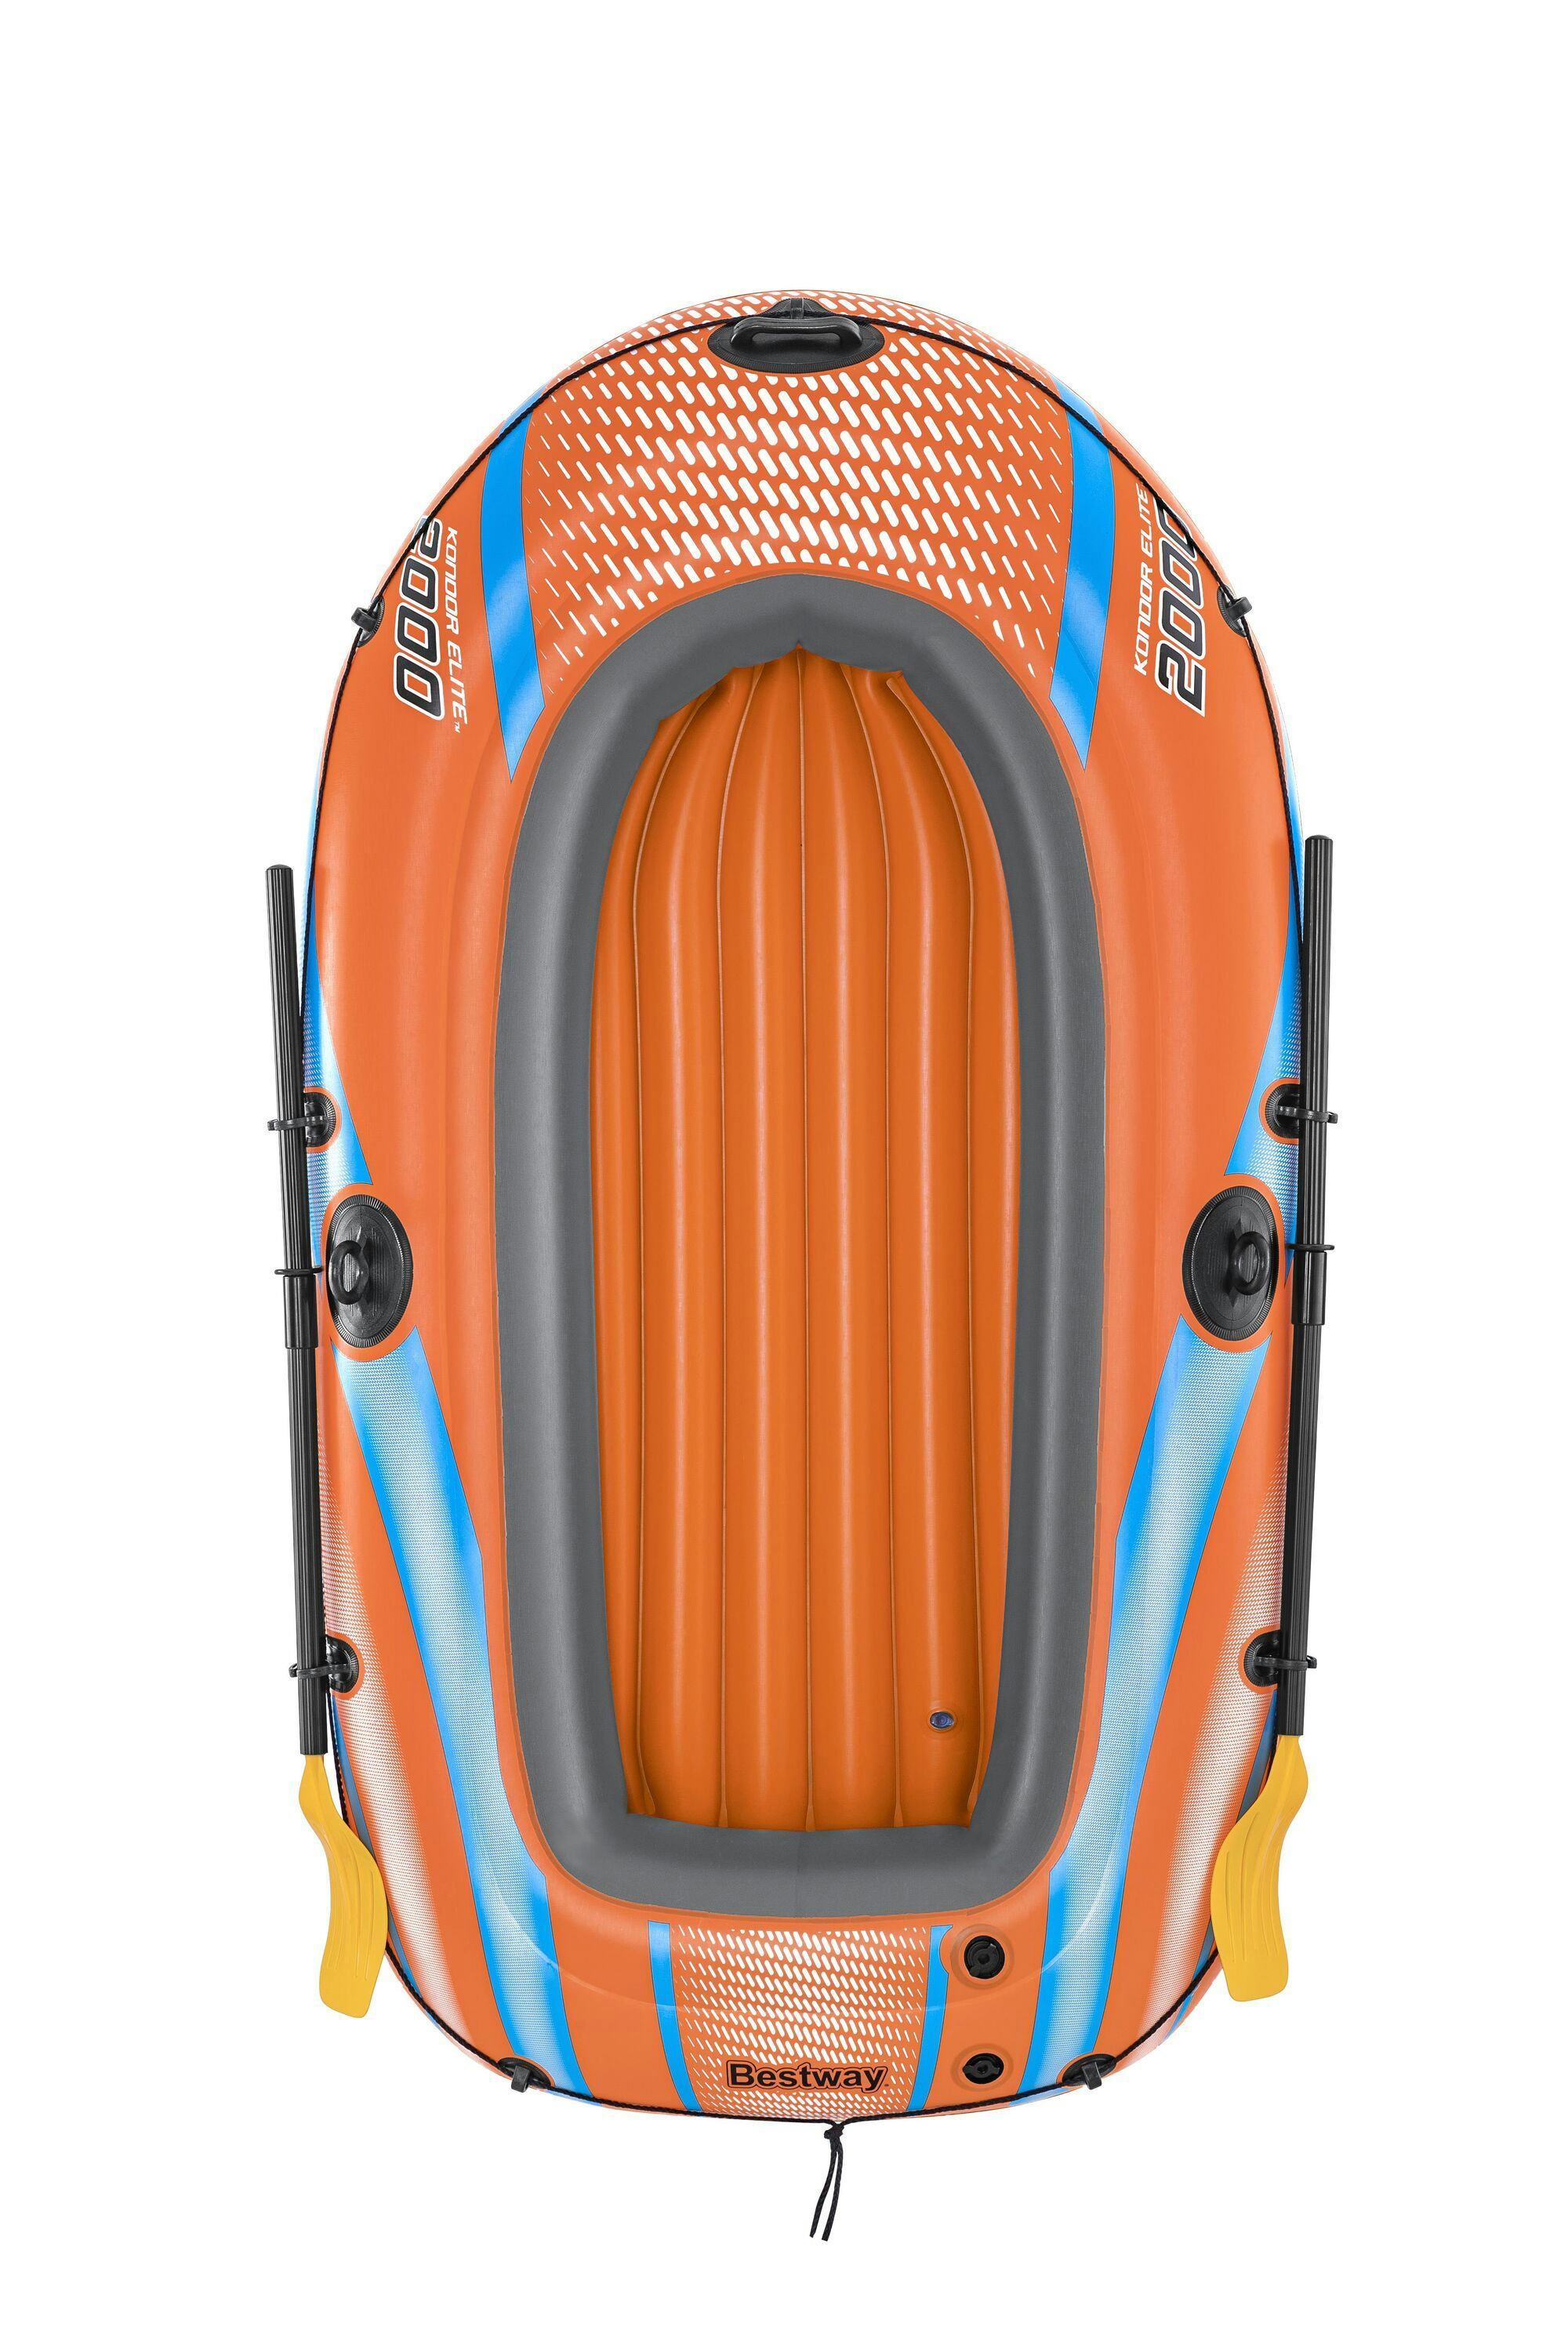 Sports d'eau Bateau gonflable Kondor Elite™ 2000 raft set, 196 x 106 cm, 1 adulte+1enfant, 120kg max, pompe à pied et 2 pagaies Bestway 13